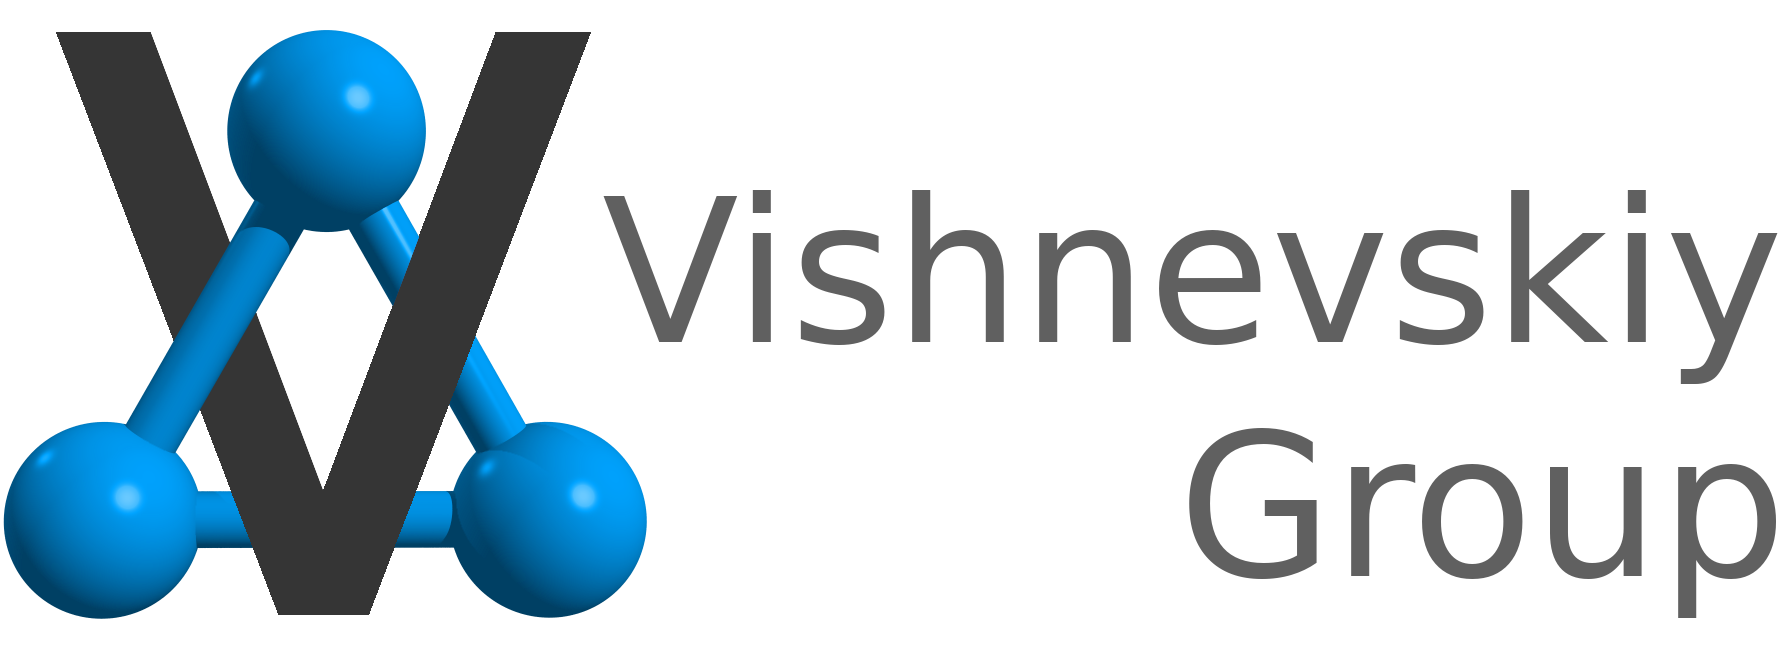 Vishnevskiy Group Logo